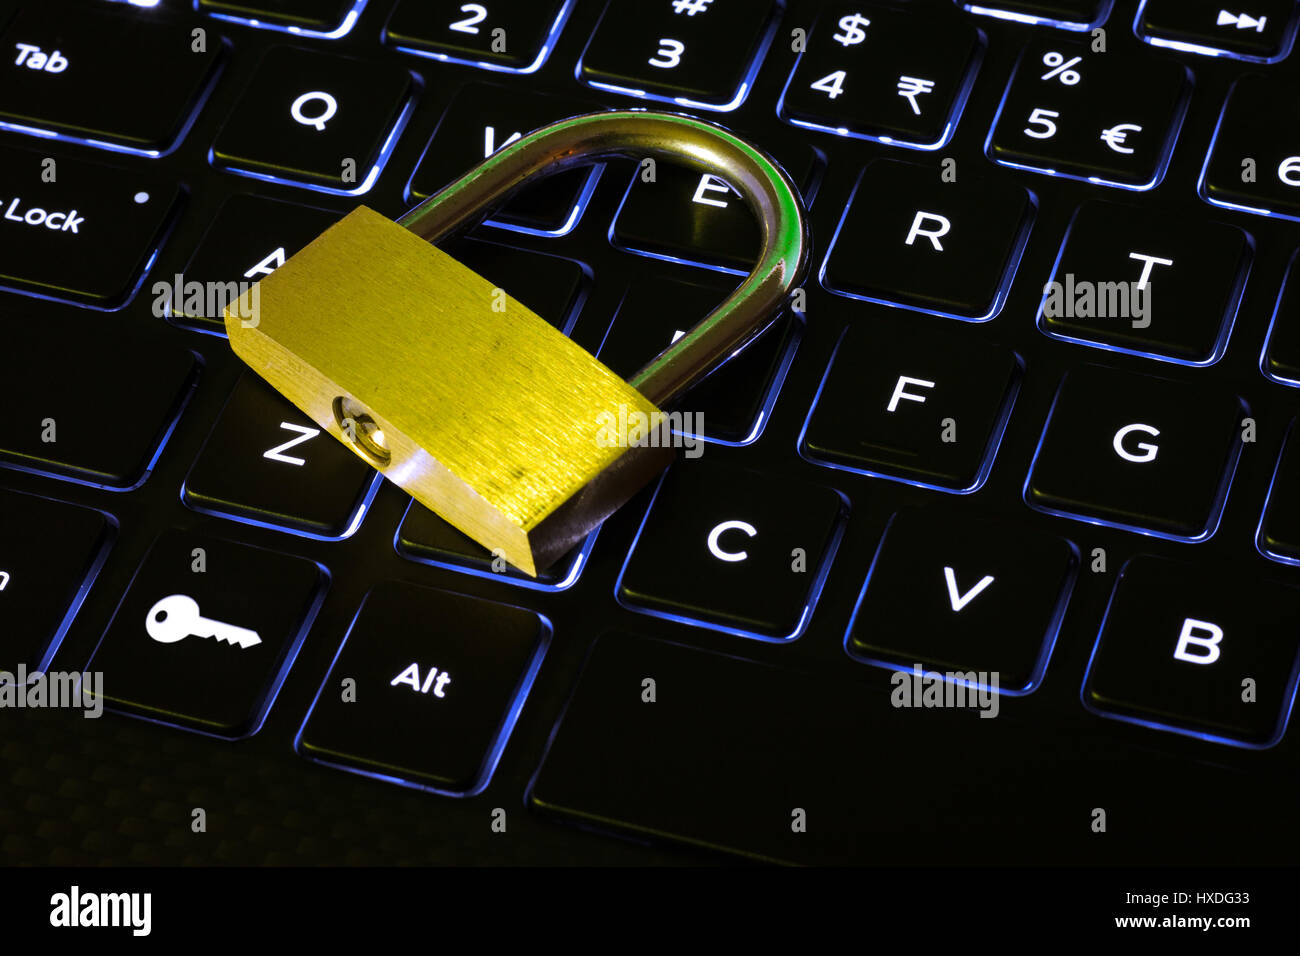 Geschlossen, Schloss und Schlüssel-Taste auf eine Computer-Tastatur mit Hintergrundbeleuchtung Stockfoto